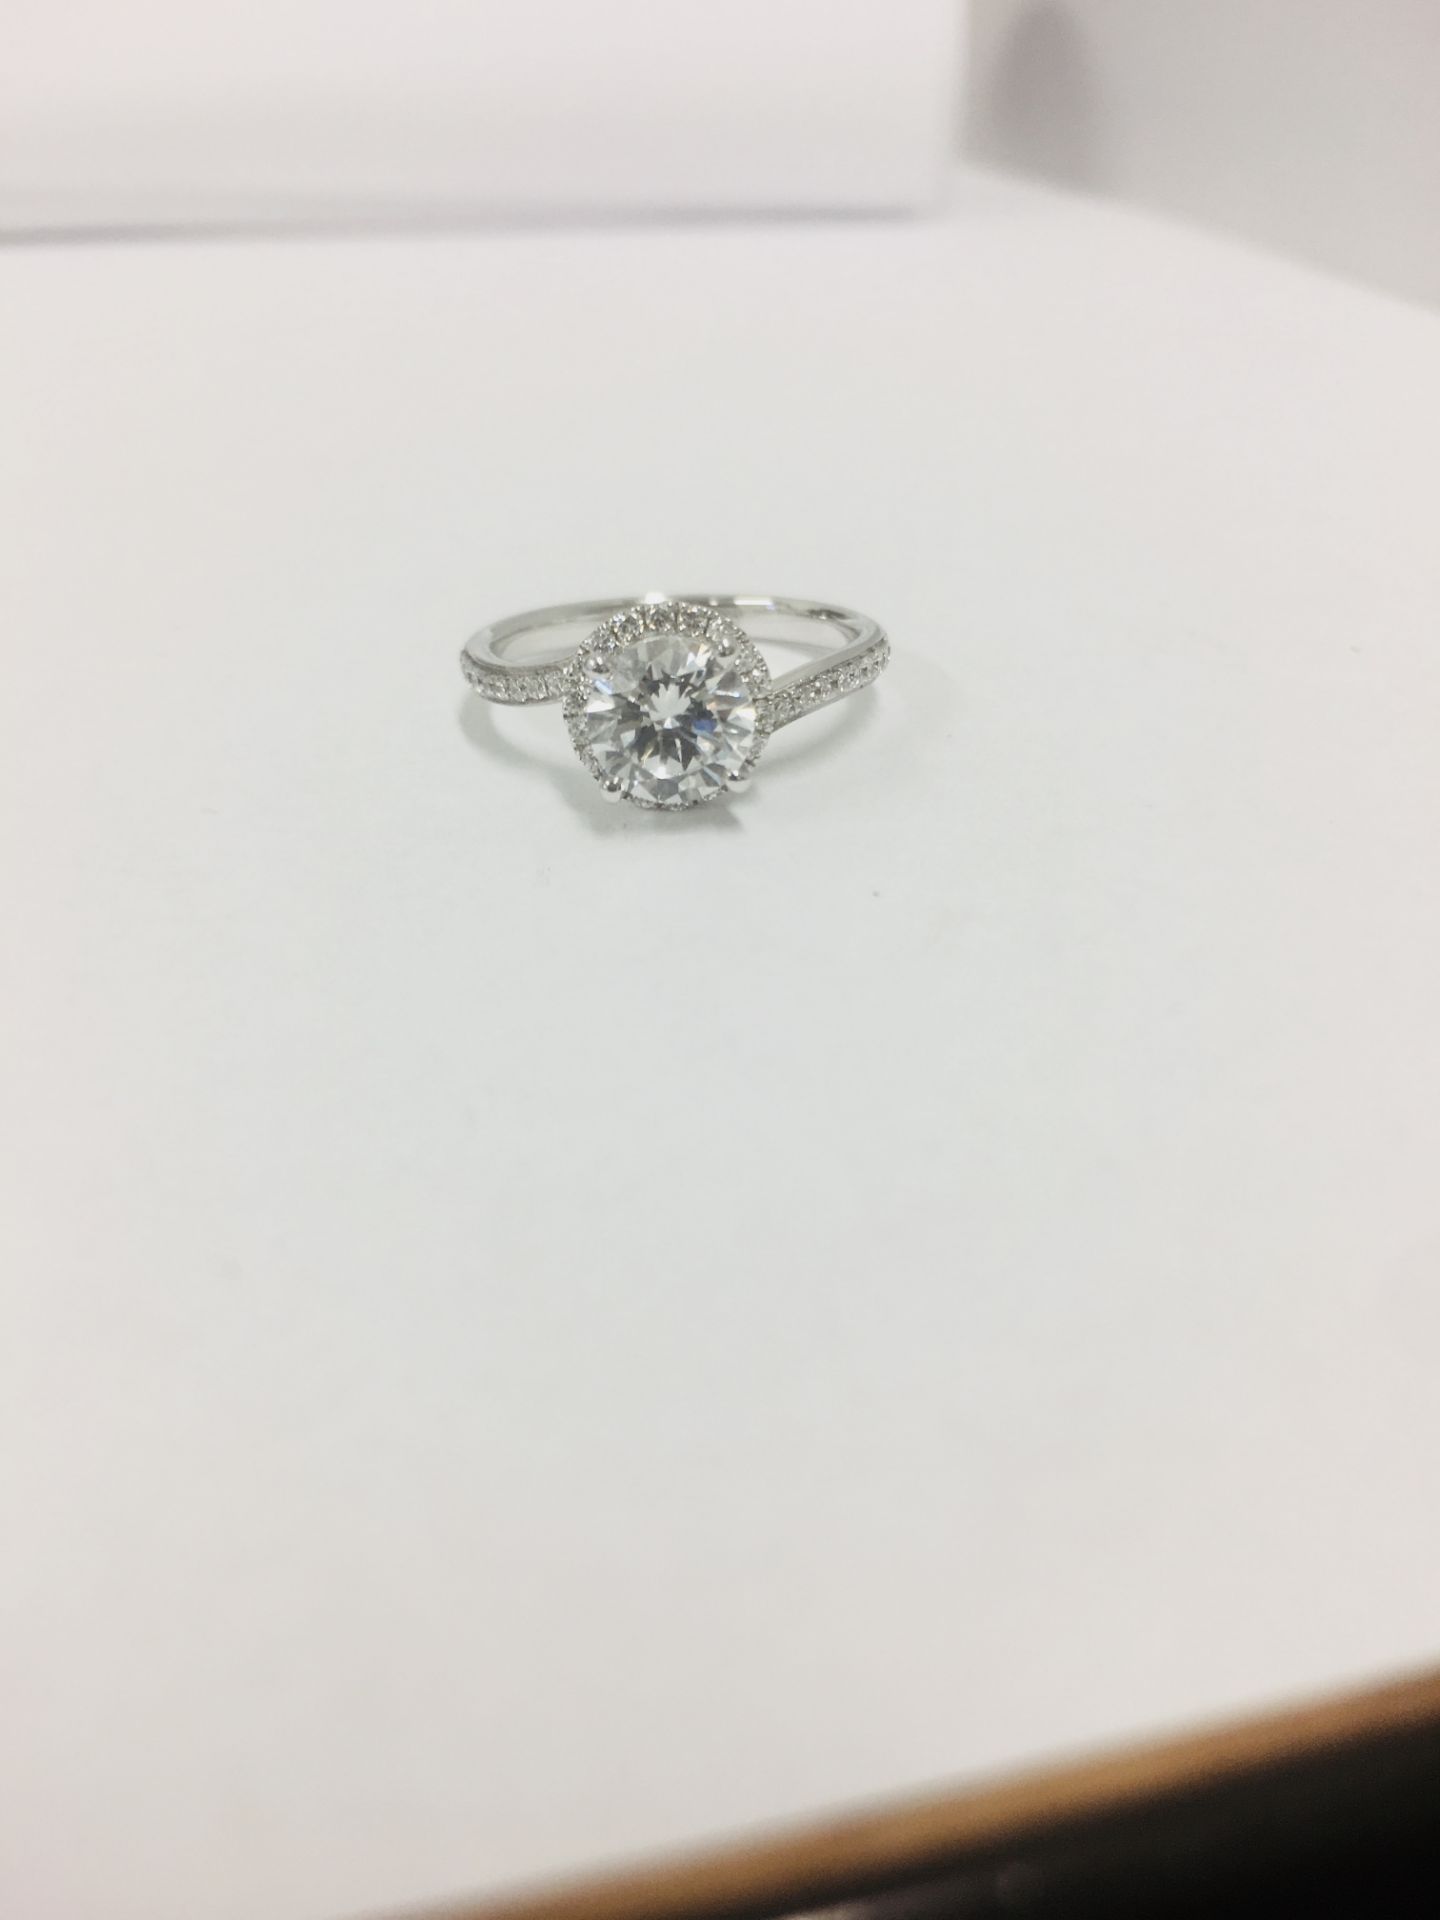 Platinum diamond solitaire ring,0.50ct brilliant cut diamond h colour vs clarity, - Image 5 of 6